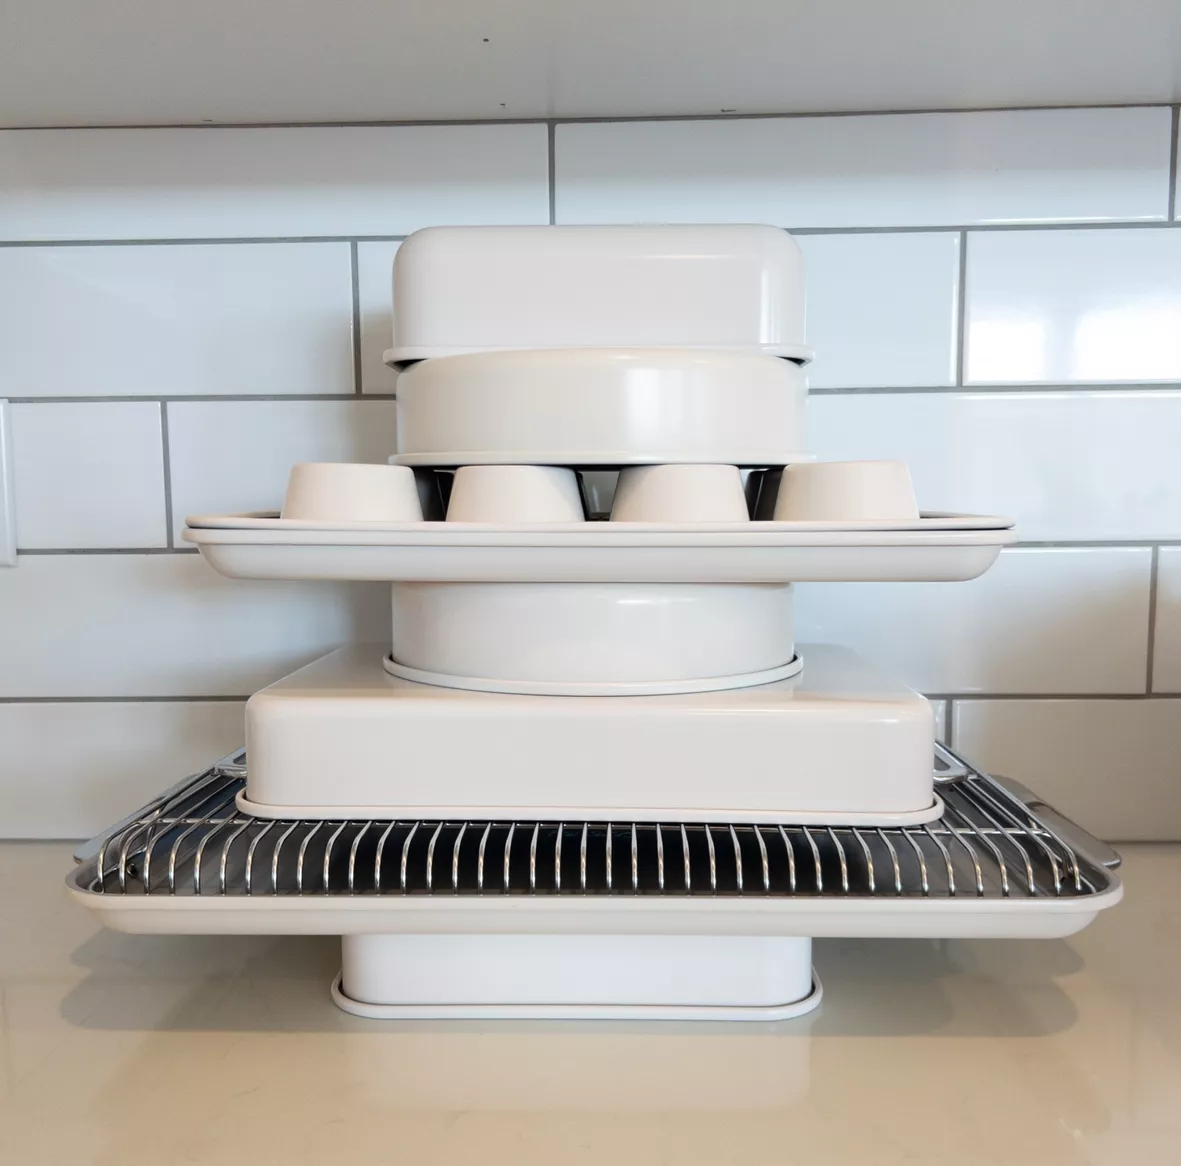 Caraway Complete Bakeware Set in Gray  Bakeware set, Ceramic bakeware set,  Ceramic bakeware